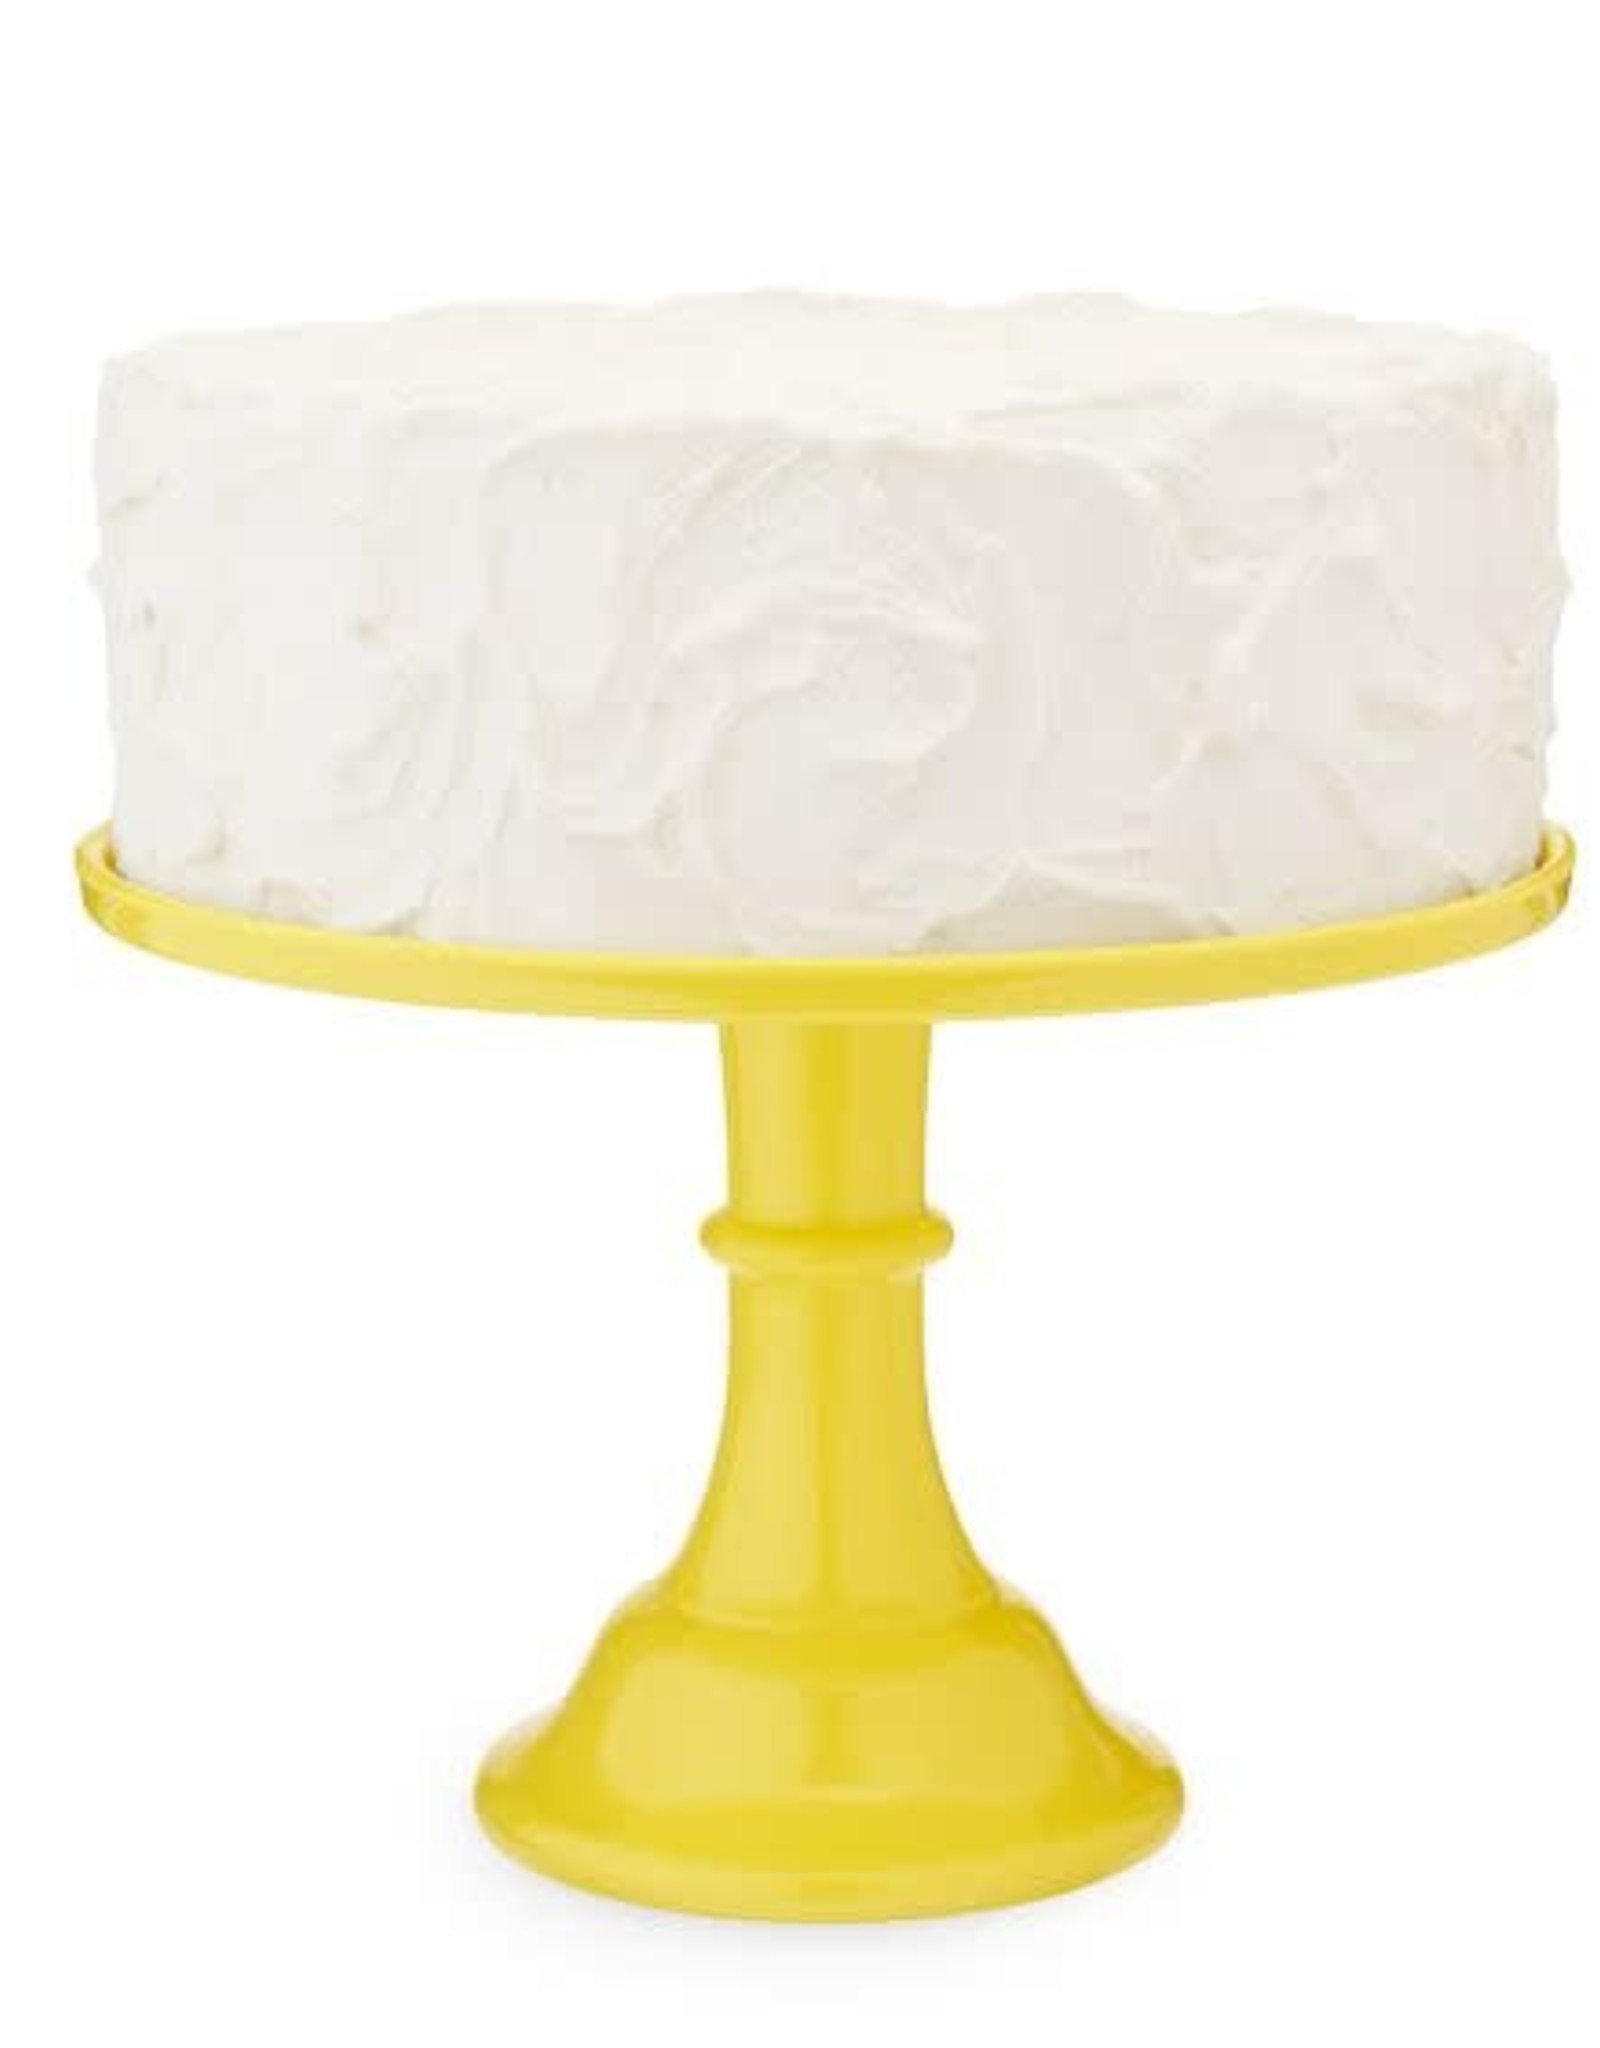 Yellow Cake Stand